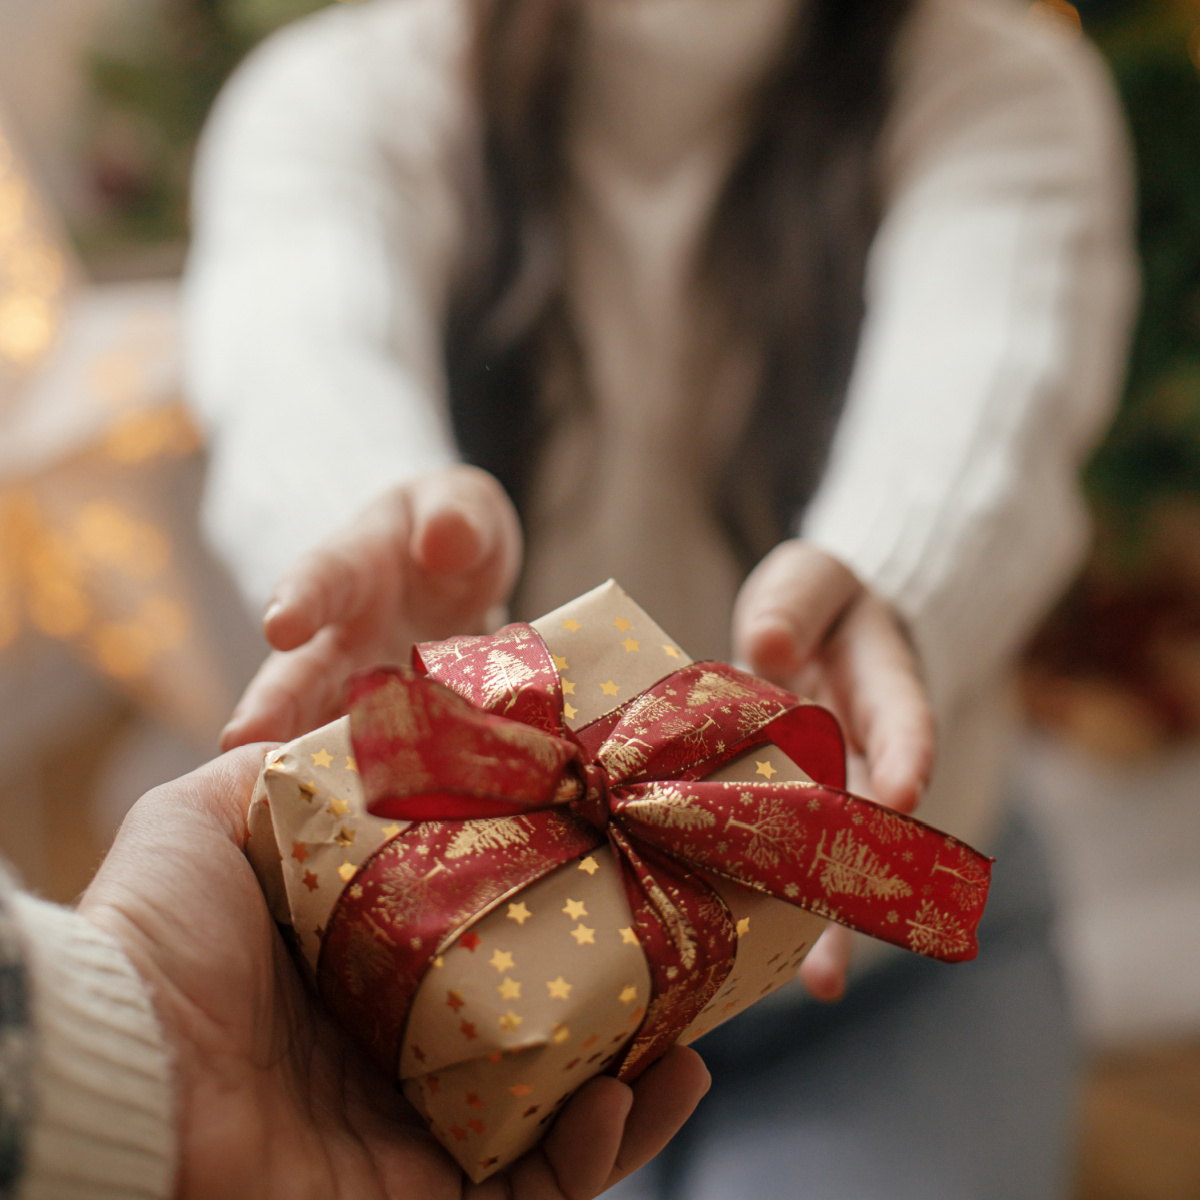 The Christmas Gift Exchange Game - Family Balance Sheet